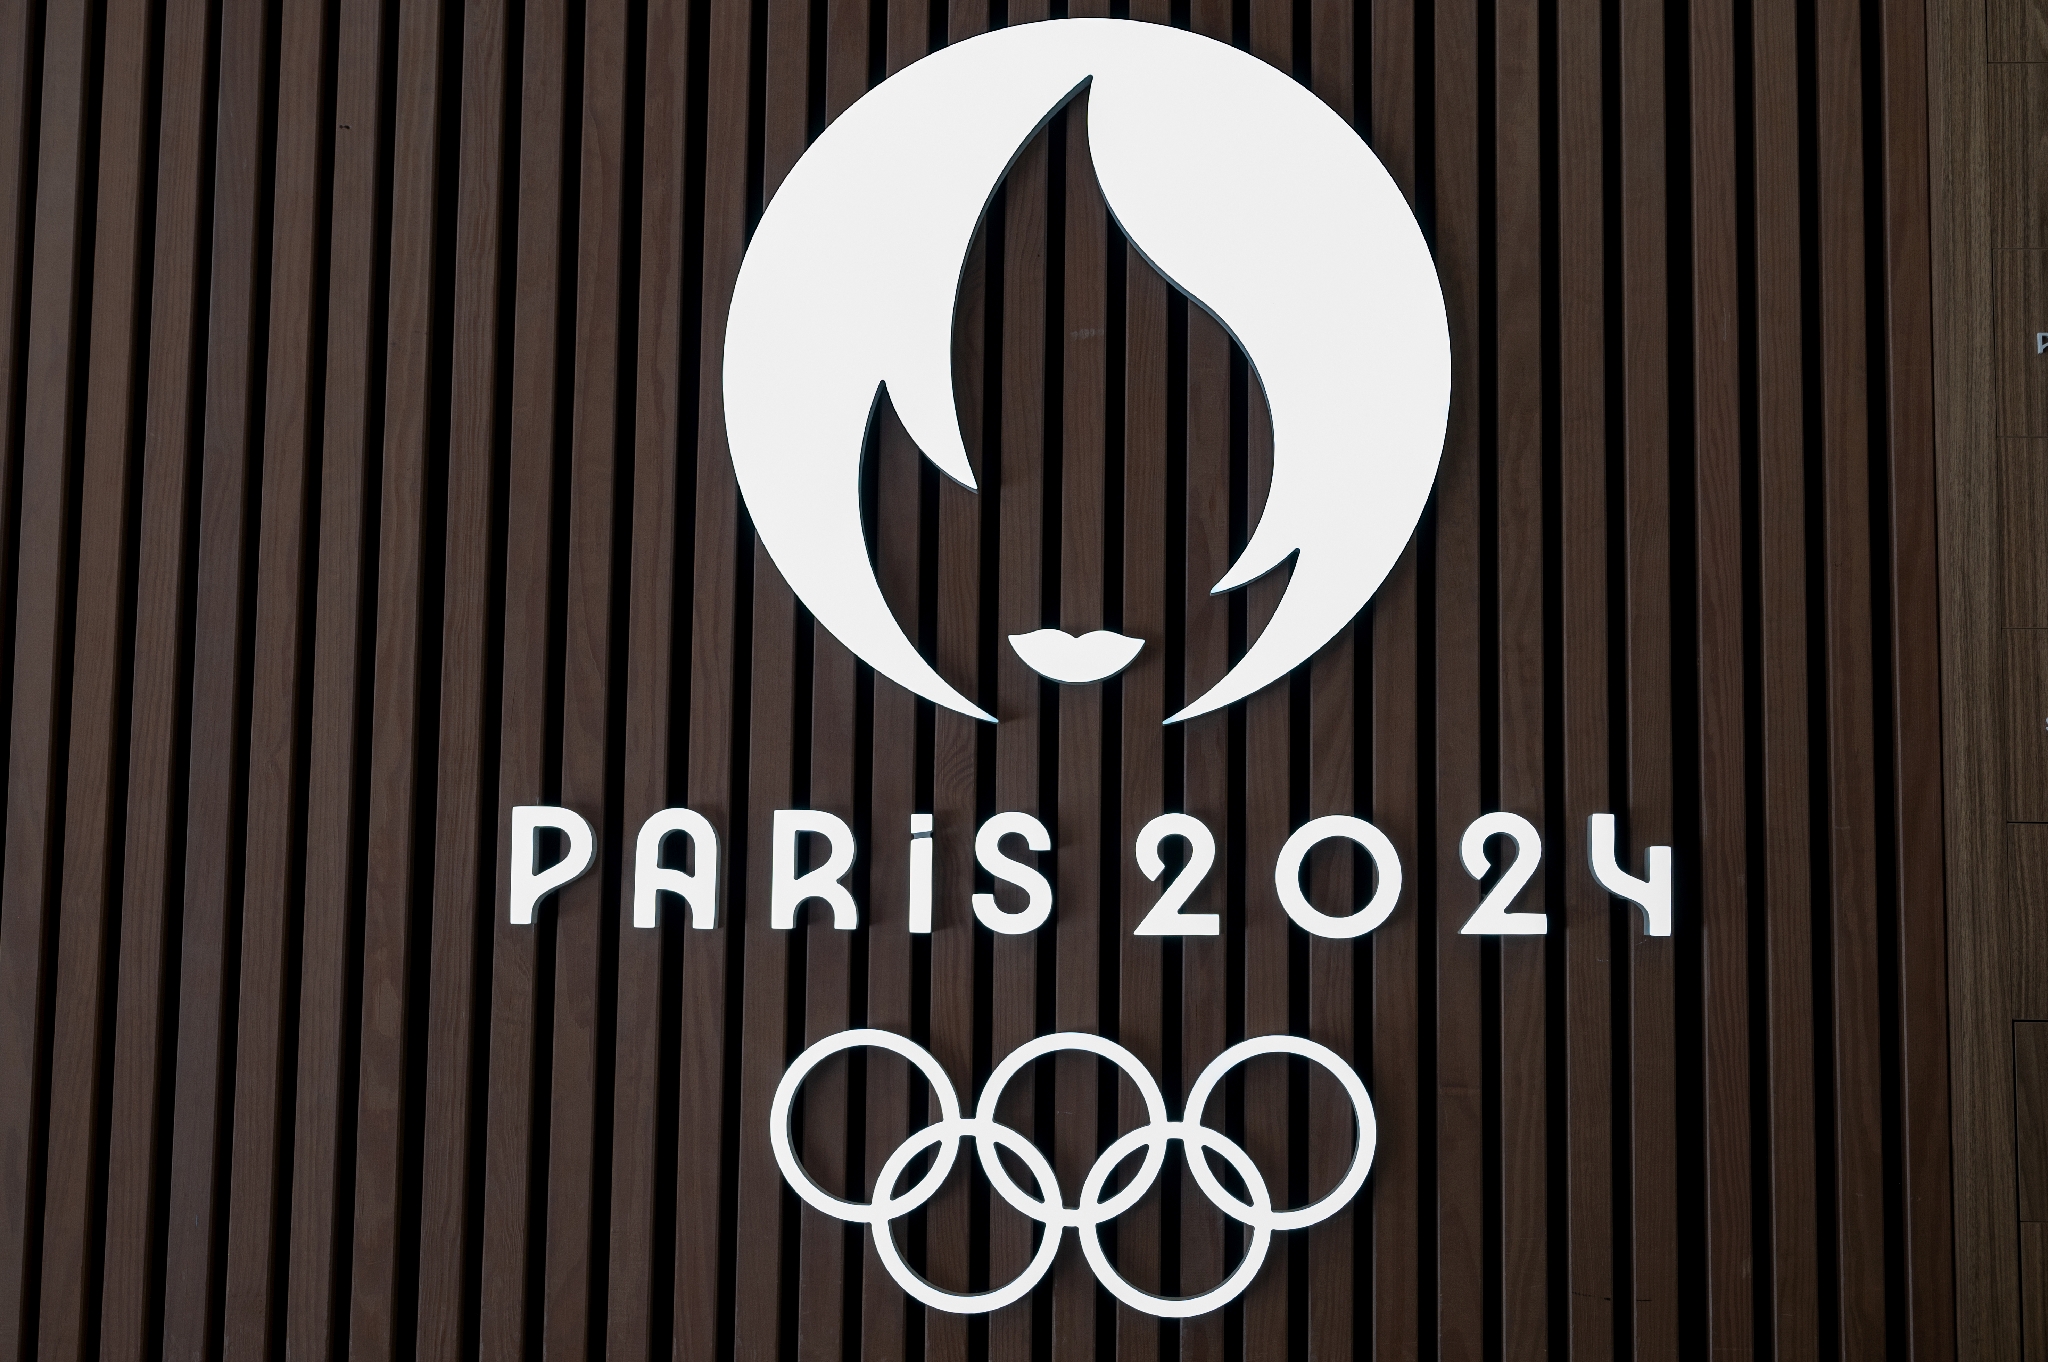 Les Jeux olympiques et paralympiques de 2024, un levier pour la